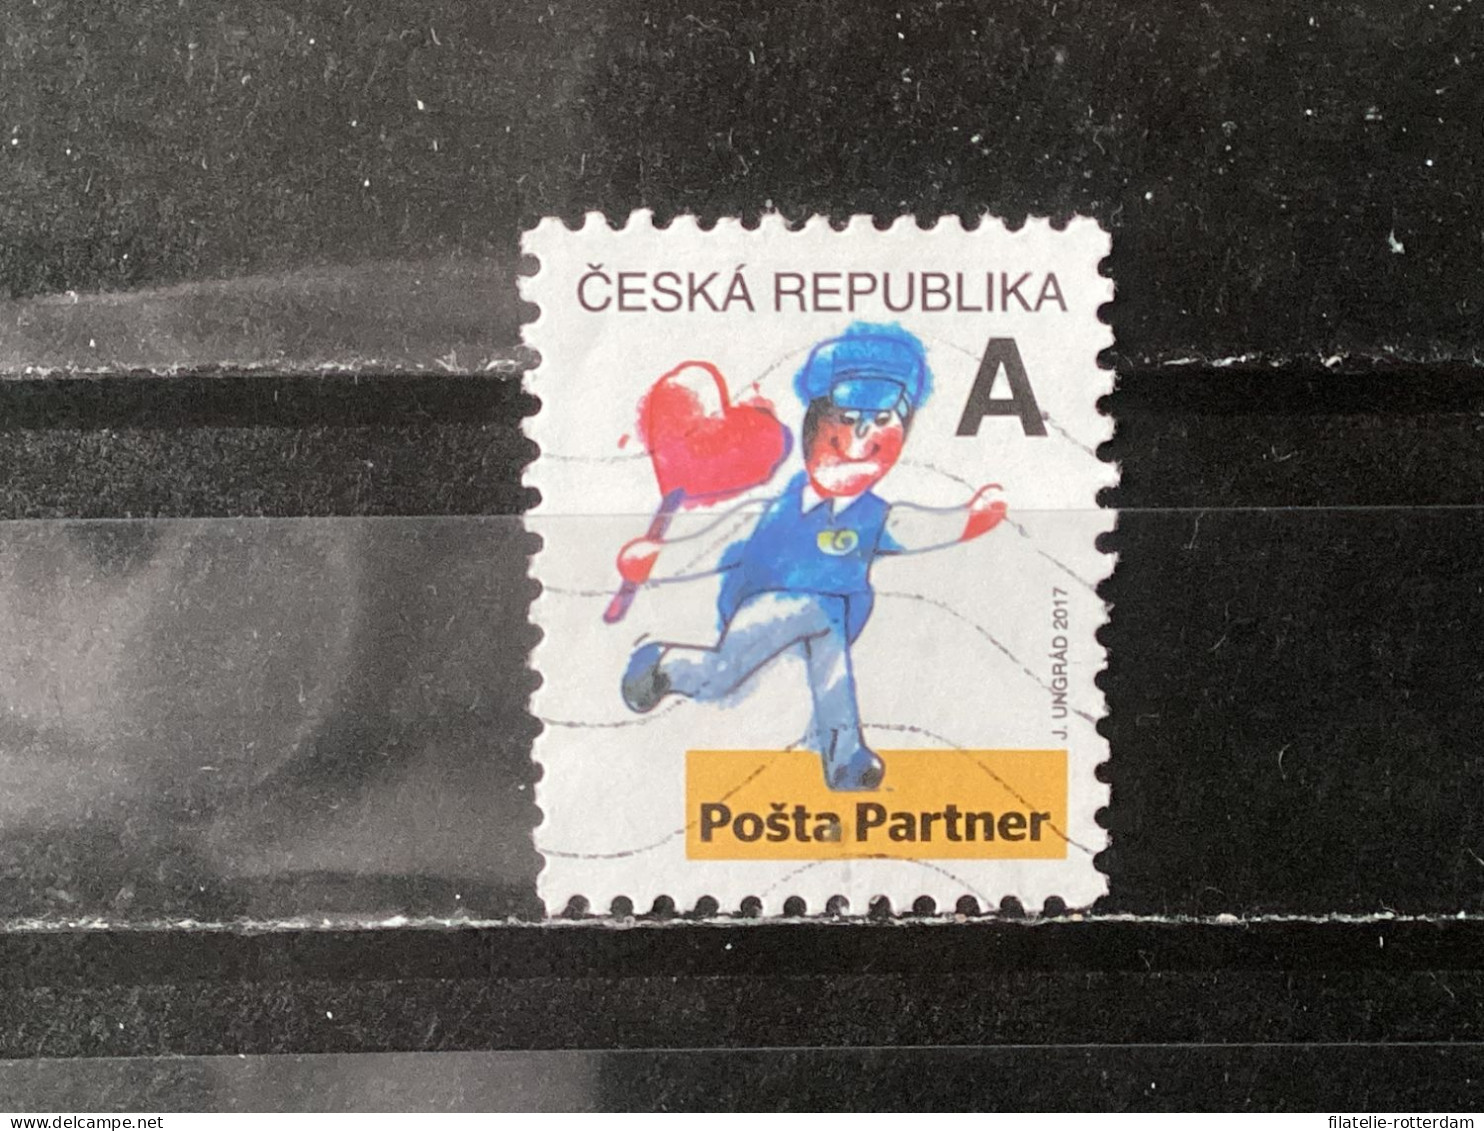 Czech Republic / Tsjechië - Partner Post Office (A) 2017 - Gebraucht